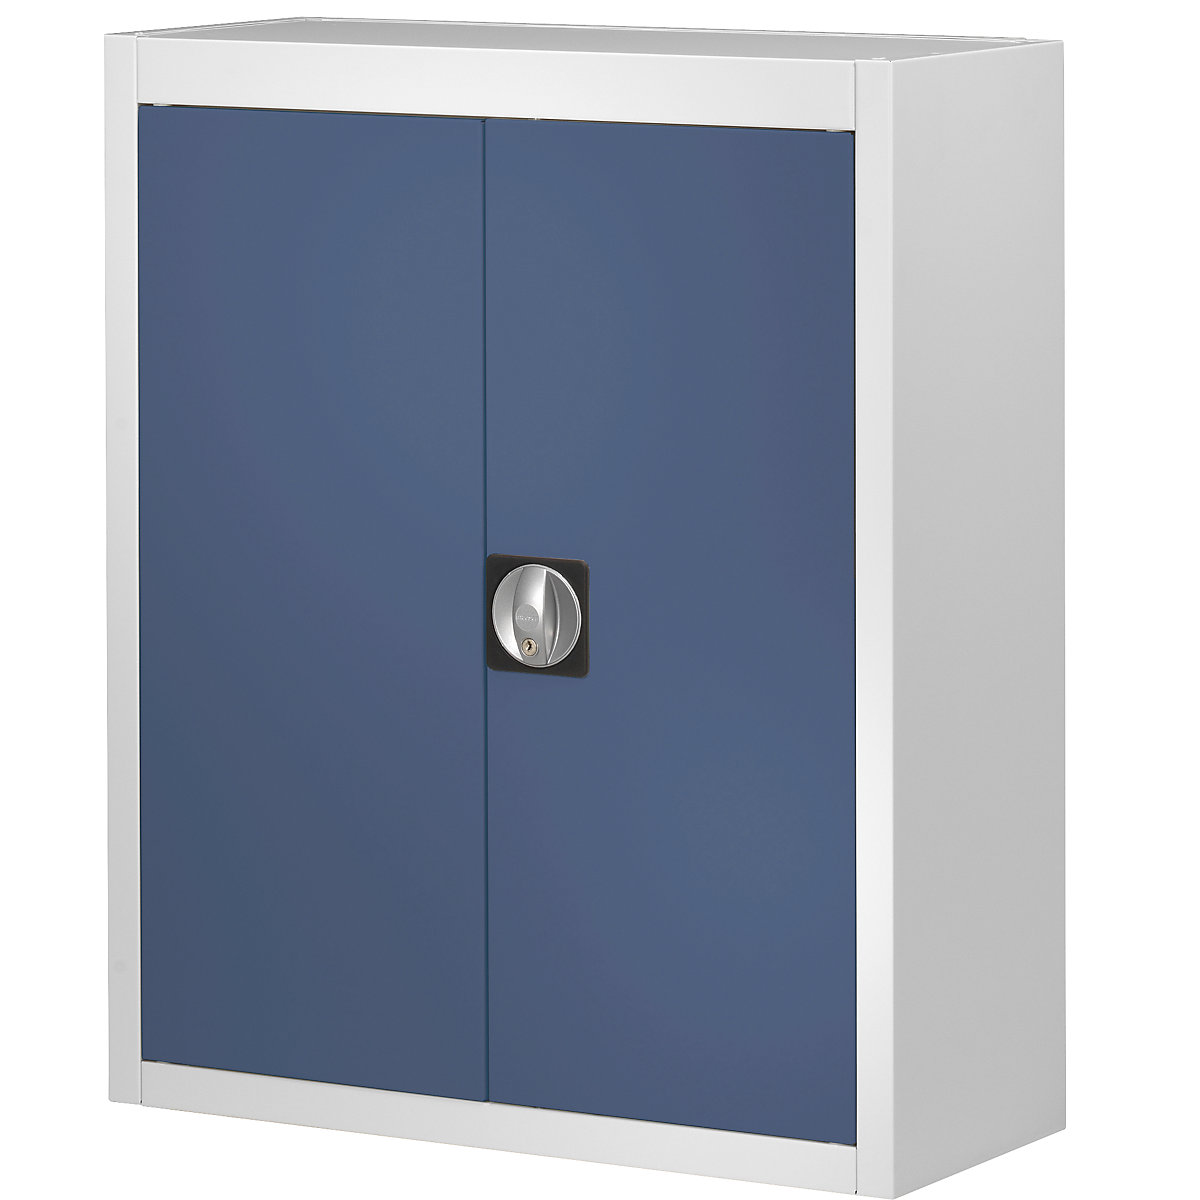 Magazijnkast, zonder magazijnbakken – mauser, h x b x d = 820 x 680 x 280 mm, tweekleurig, kastframe grijs, deuren blauw, vanaf 3 stuks-6